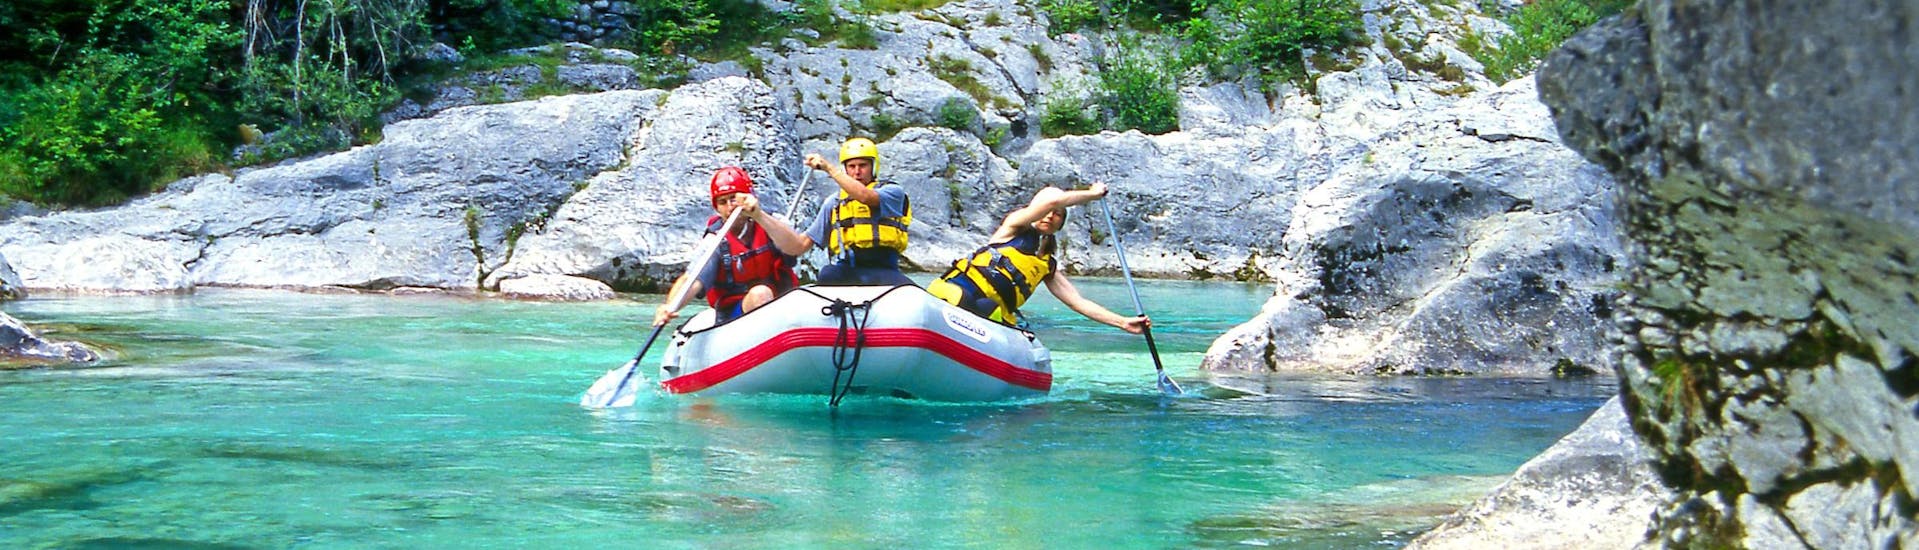 Emozioni forti vissute da un gruppo di giovani nel punto di interesse Soča, ideale per fare rafting. 